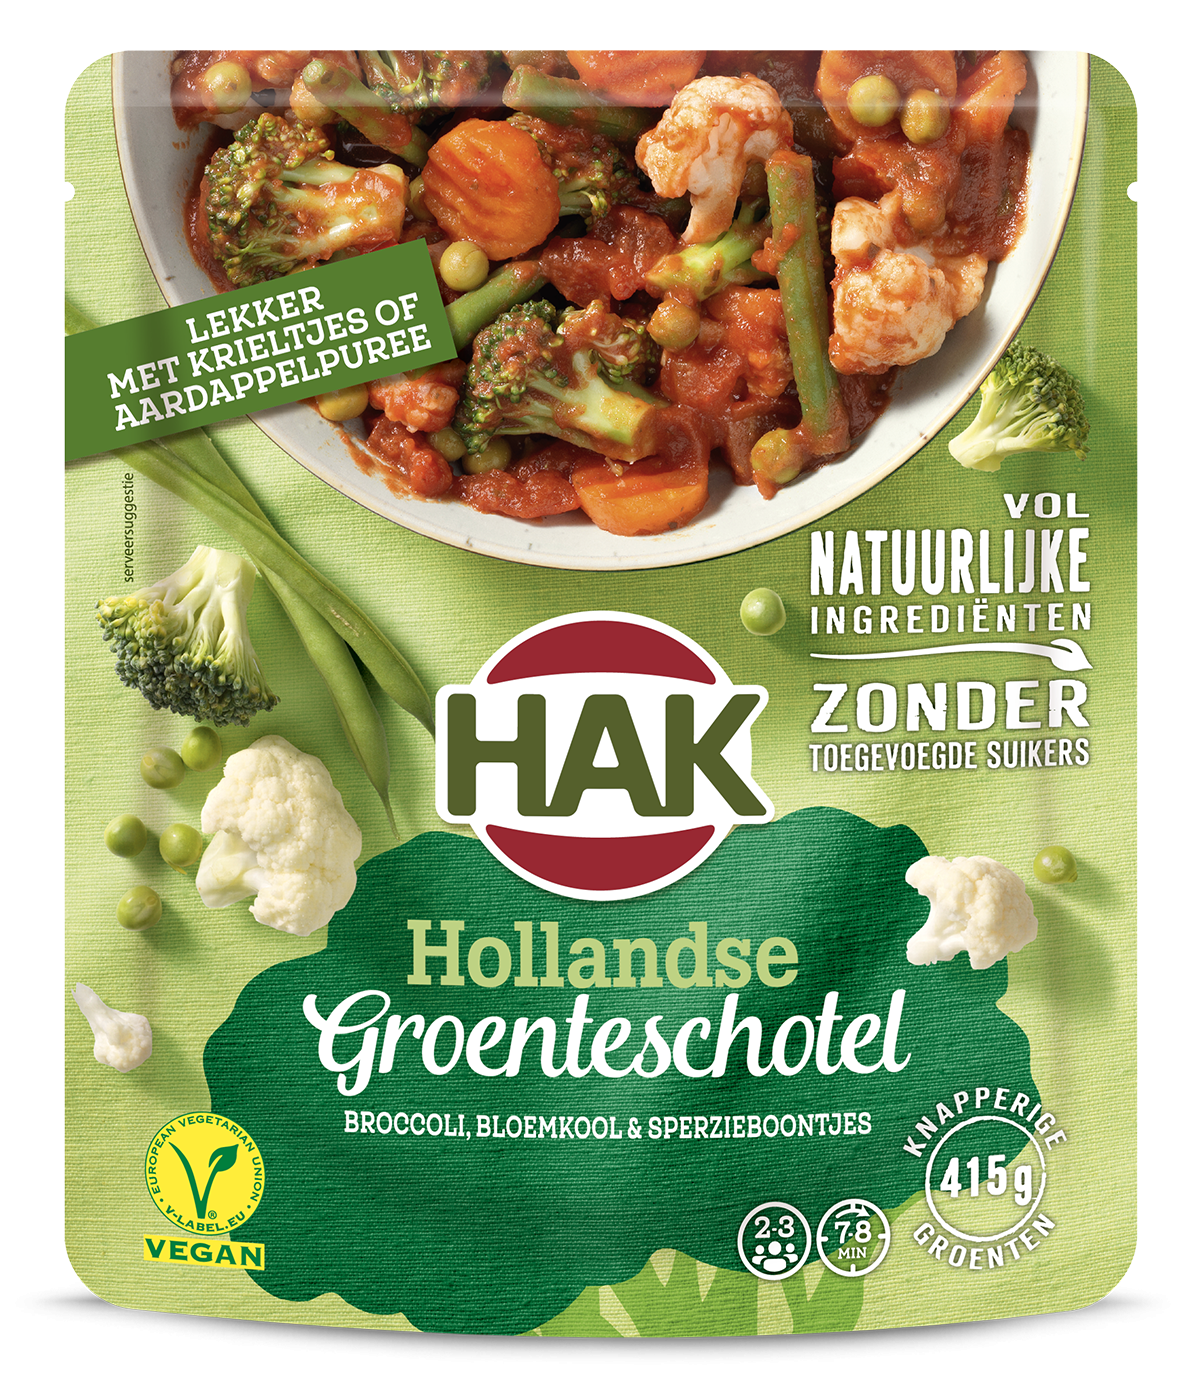 HAK-Groenteschotel-Hollands-500g-NL-EAN-8720600616181